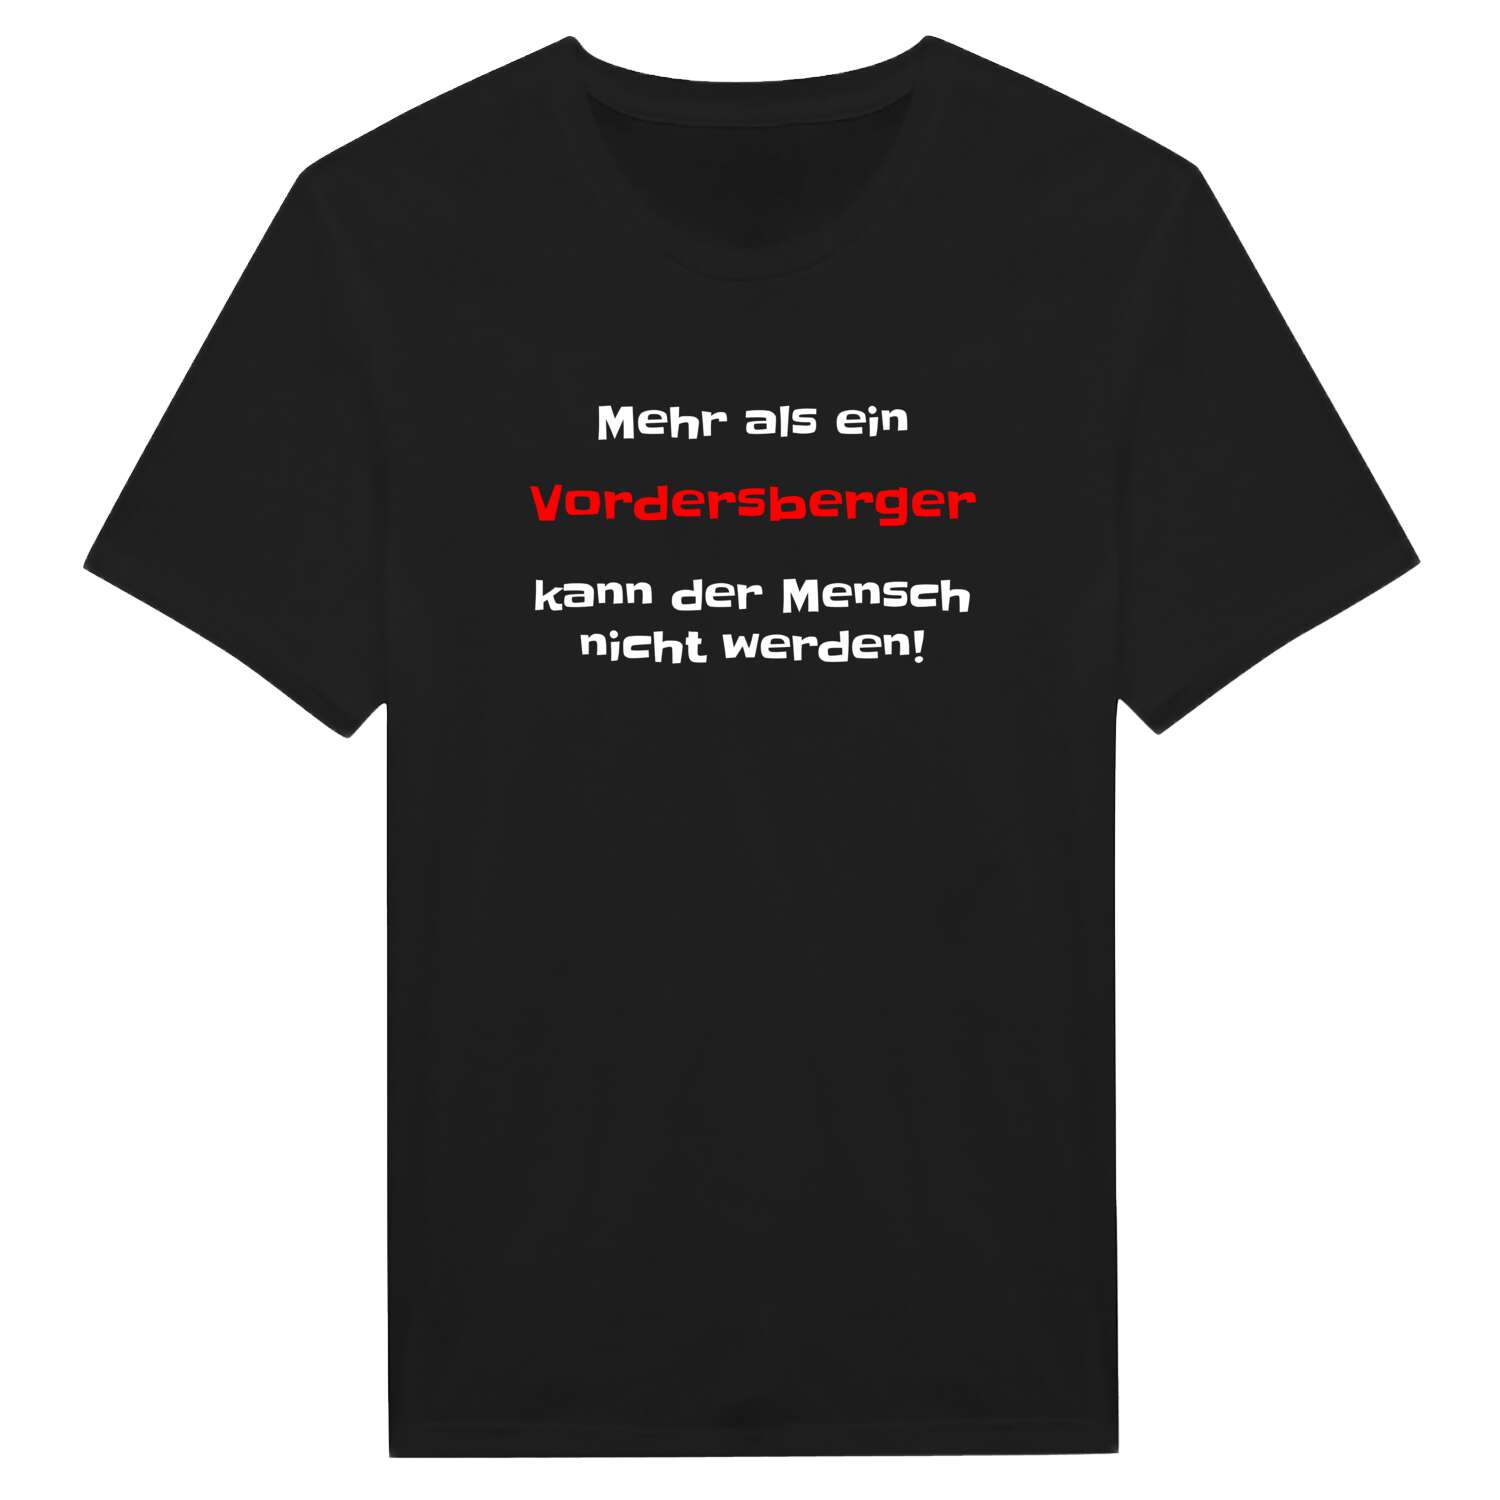 Vordersberg T-Shirt »Mehr als ein«